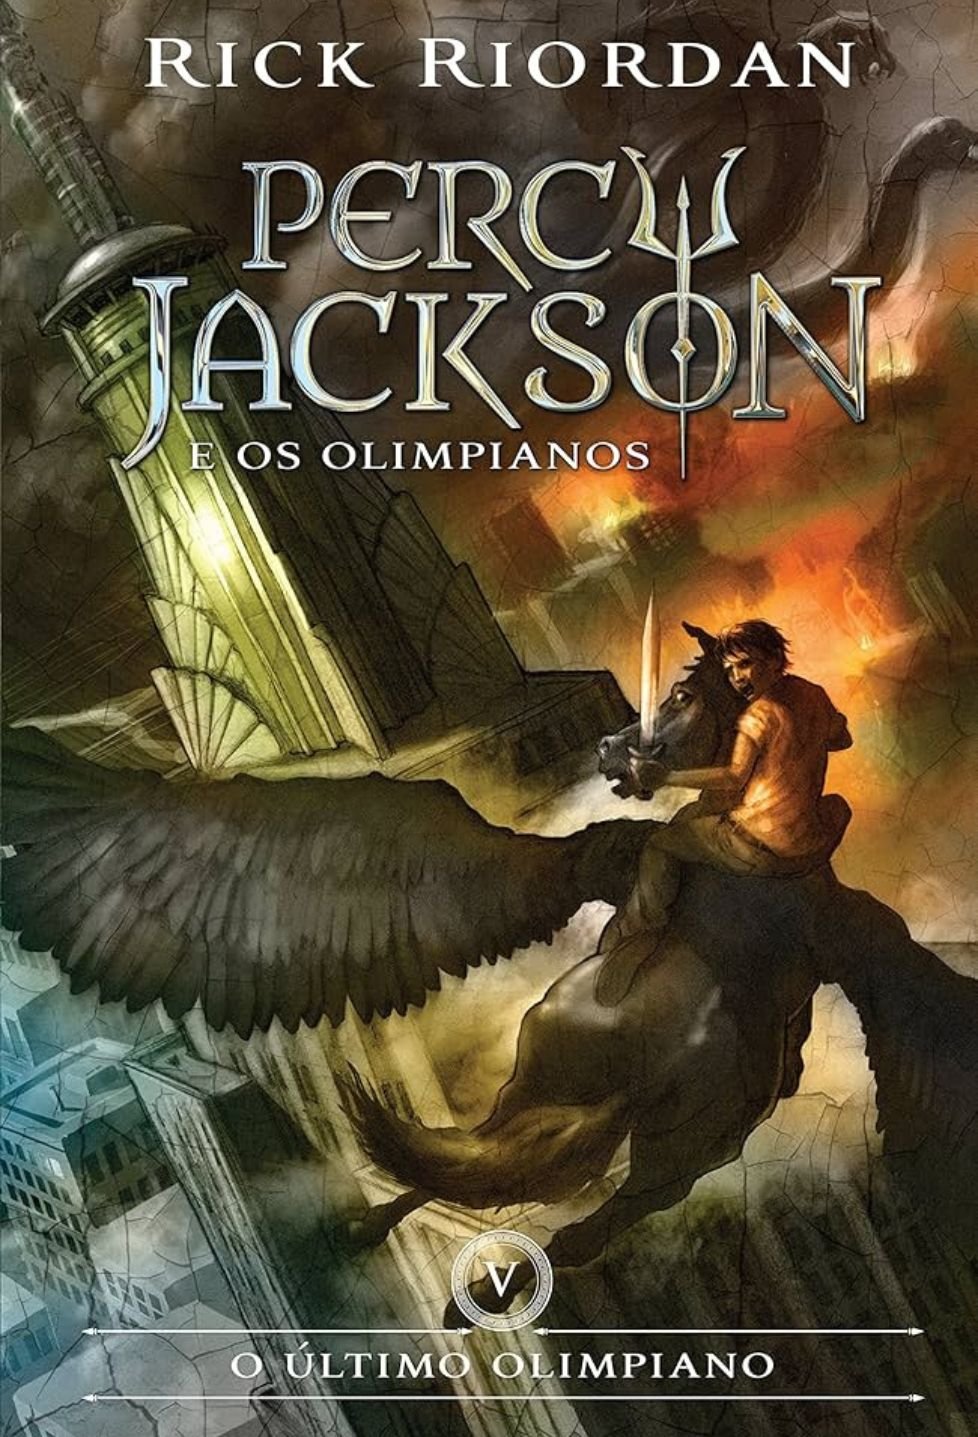 O Último Olimpiano Percy Jackson & os Olimpianos vol 5 The Last Olimpian